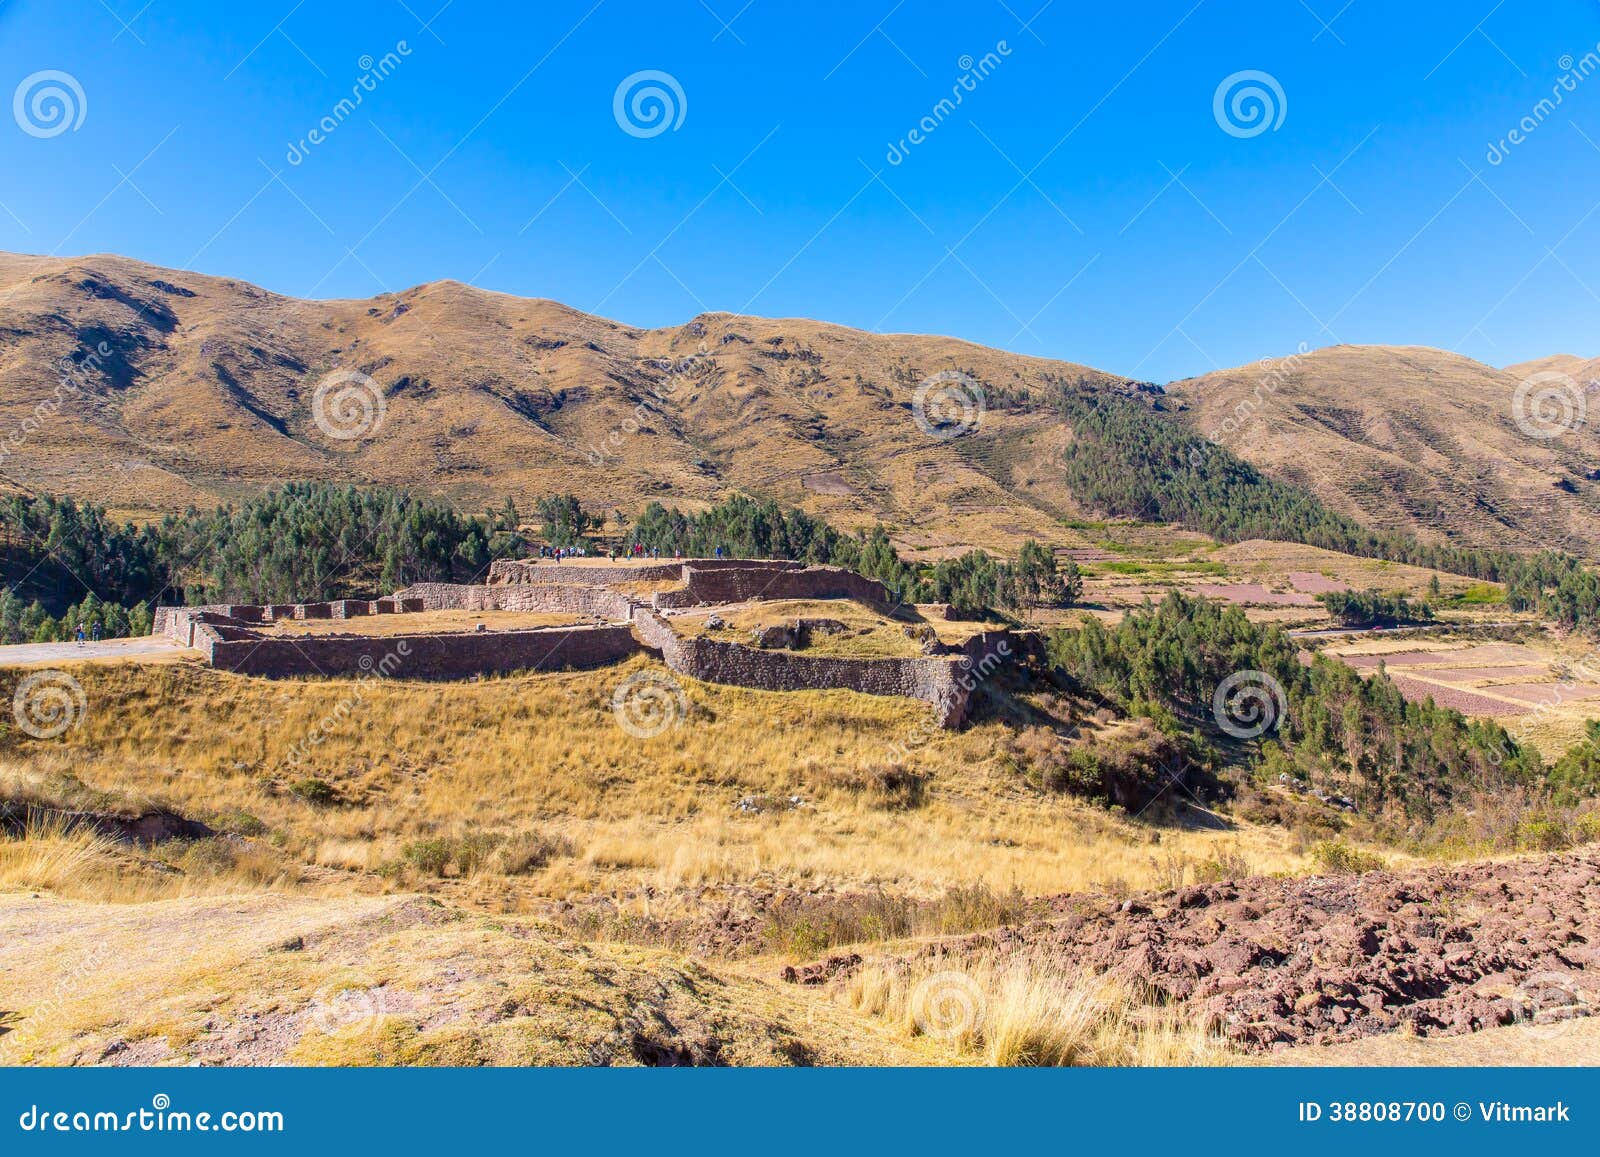 puca pucara, ancient inca fortress, cuzco, peru.